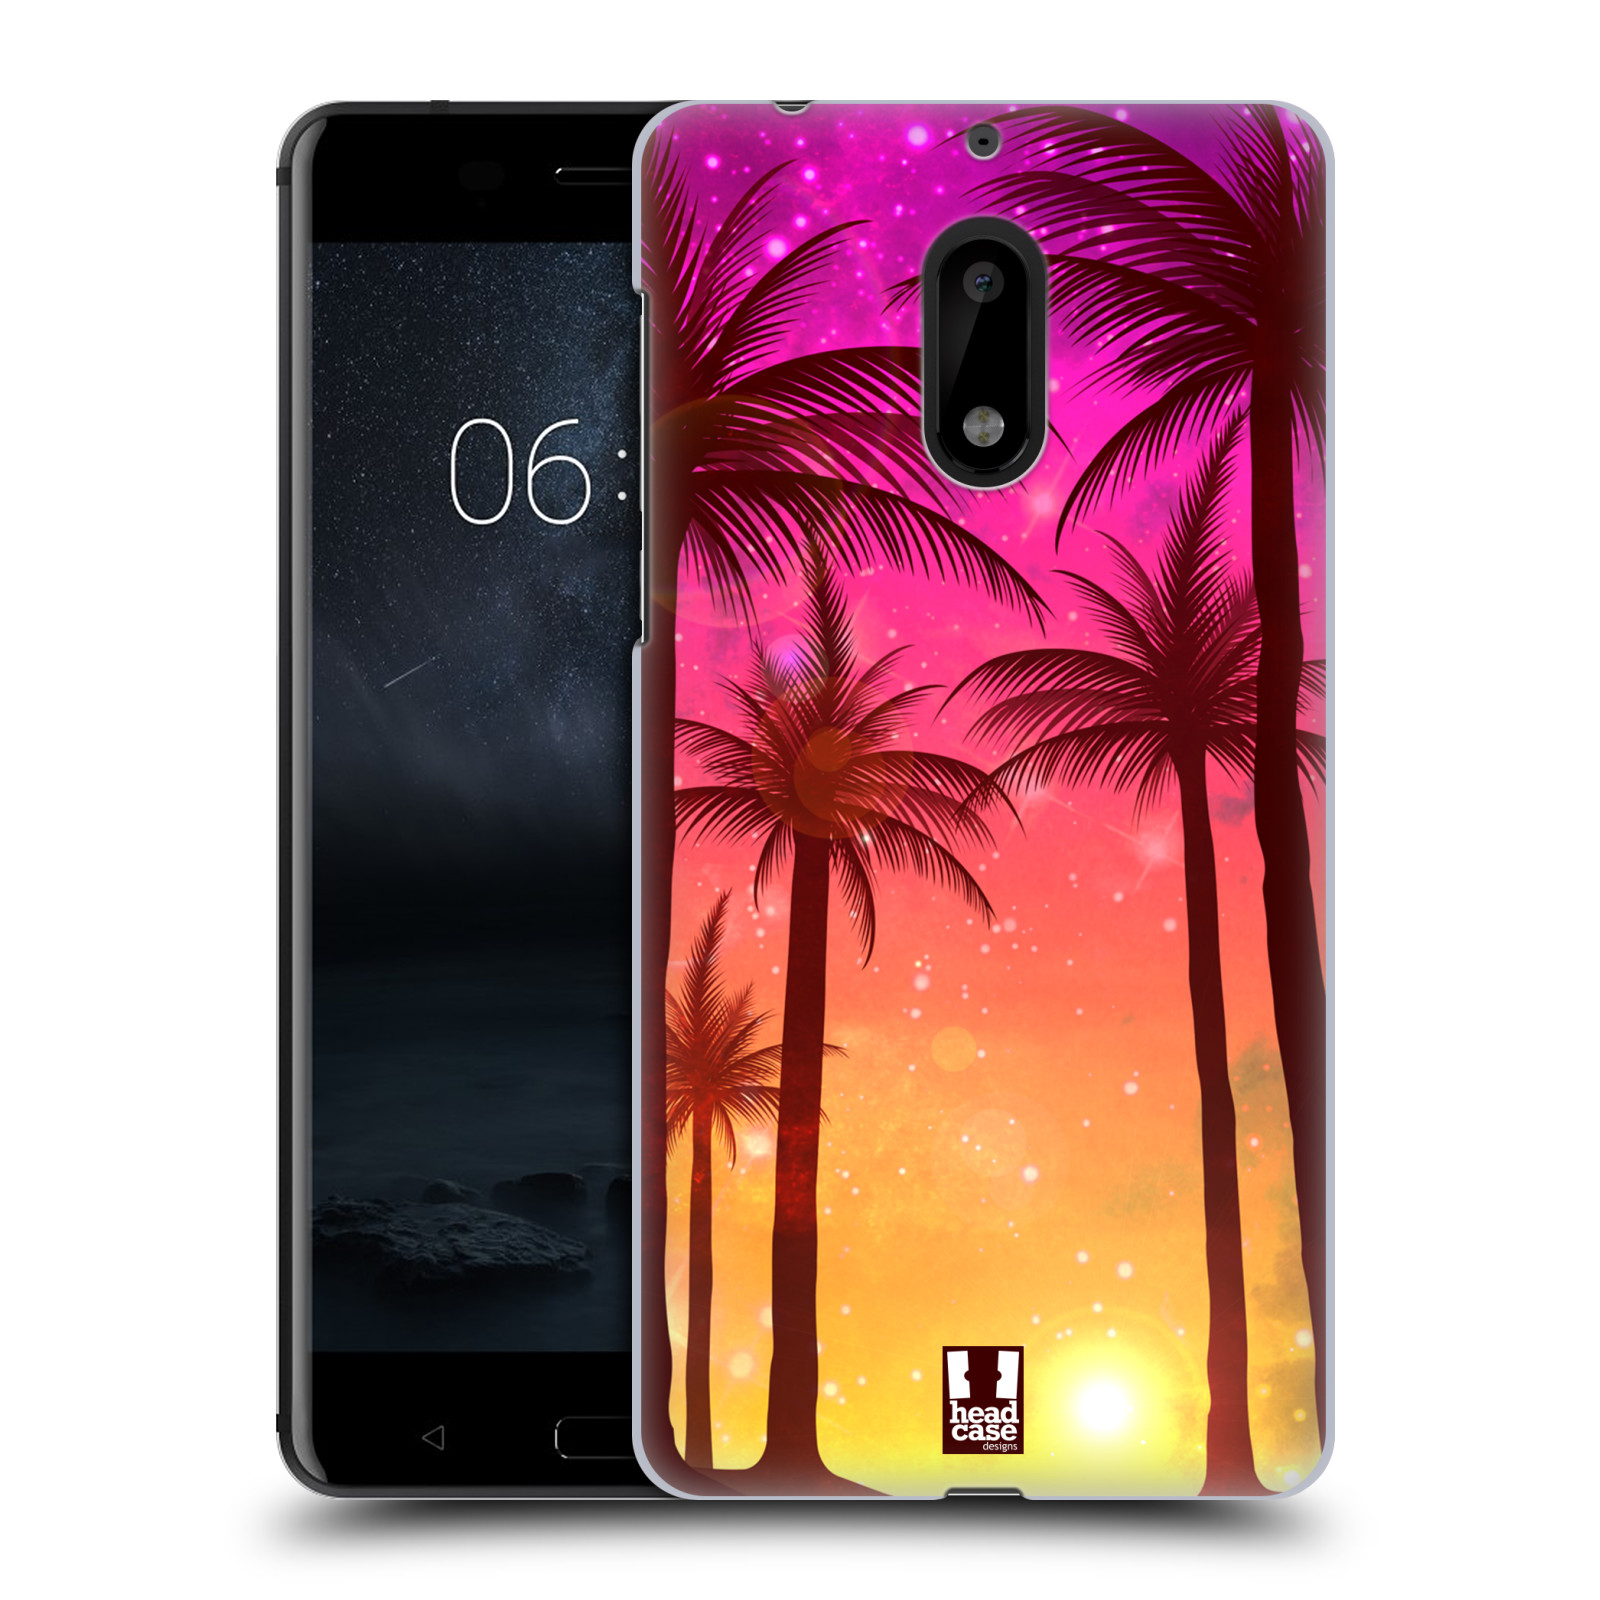 HEAD CASE plastový obal na mobil Nokia 6 vzor Kreslený motiv silueta moře a palmy RŮŽOVÁ